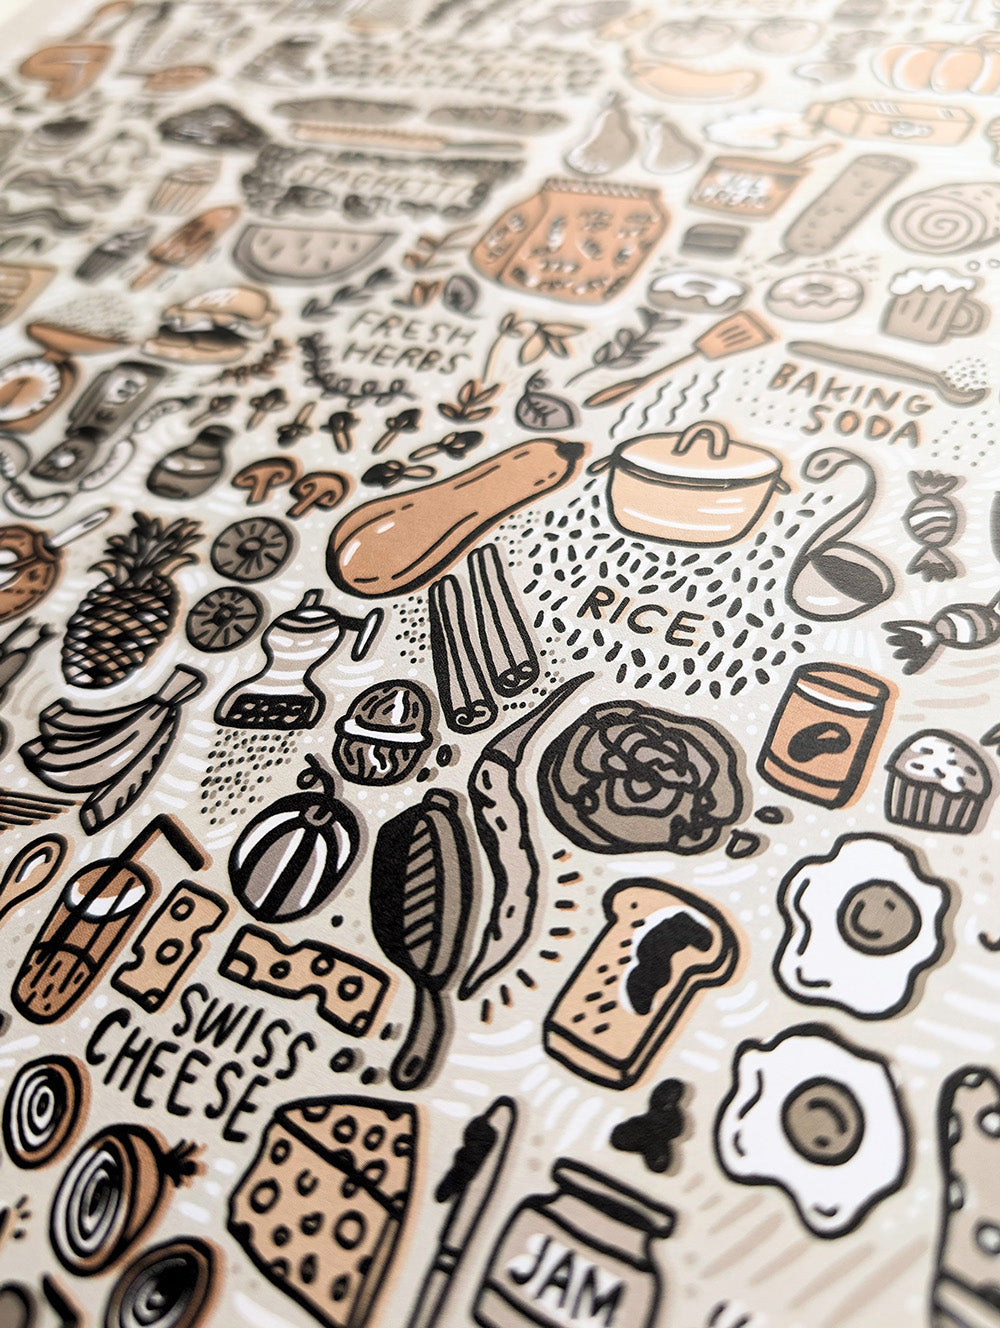 Illustrated Foodie Digital Print by Brainstorm